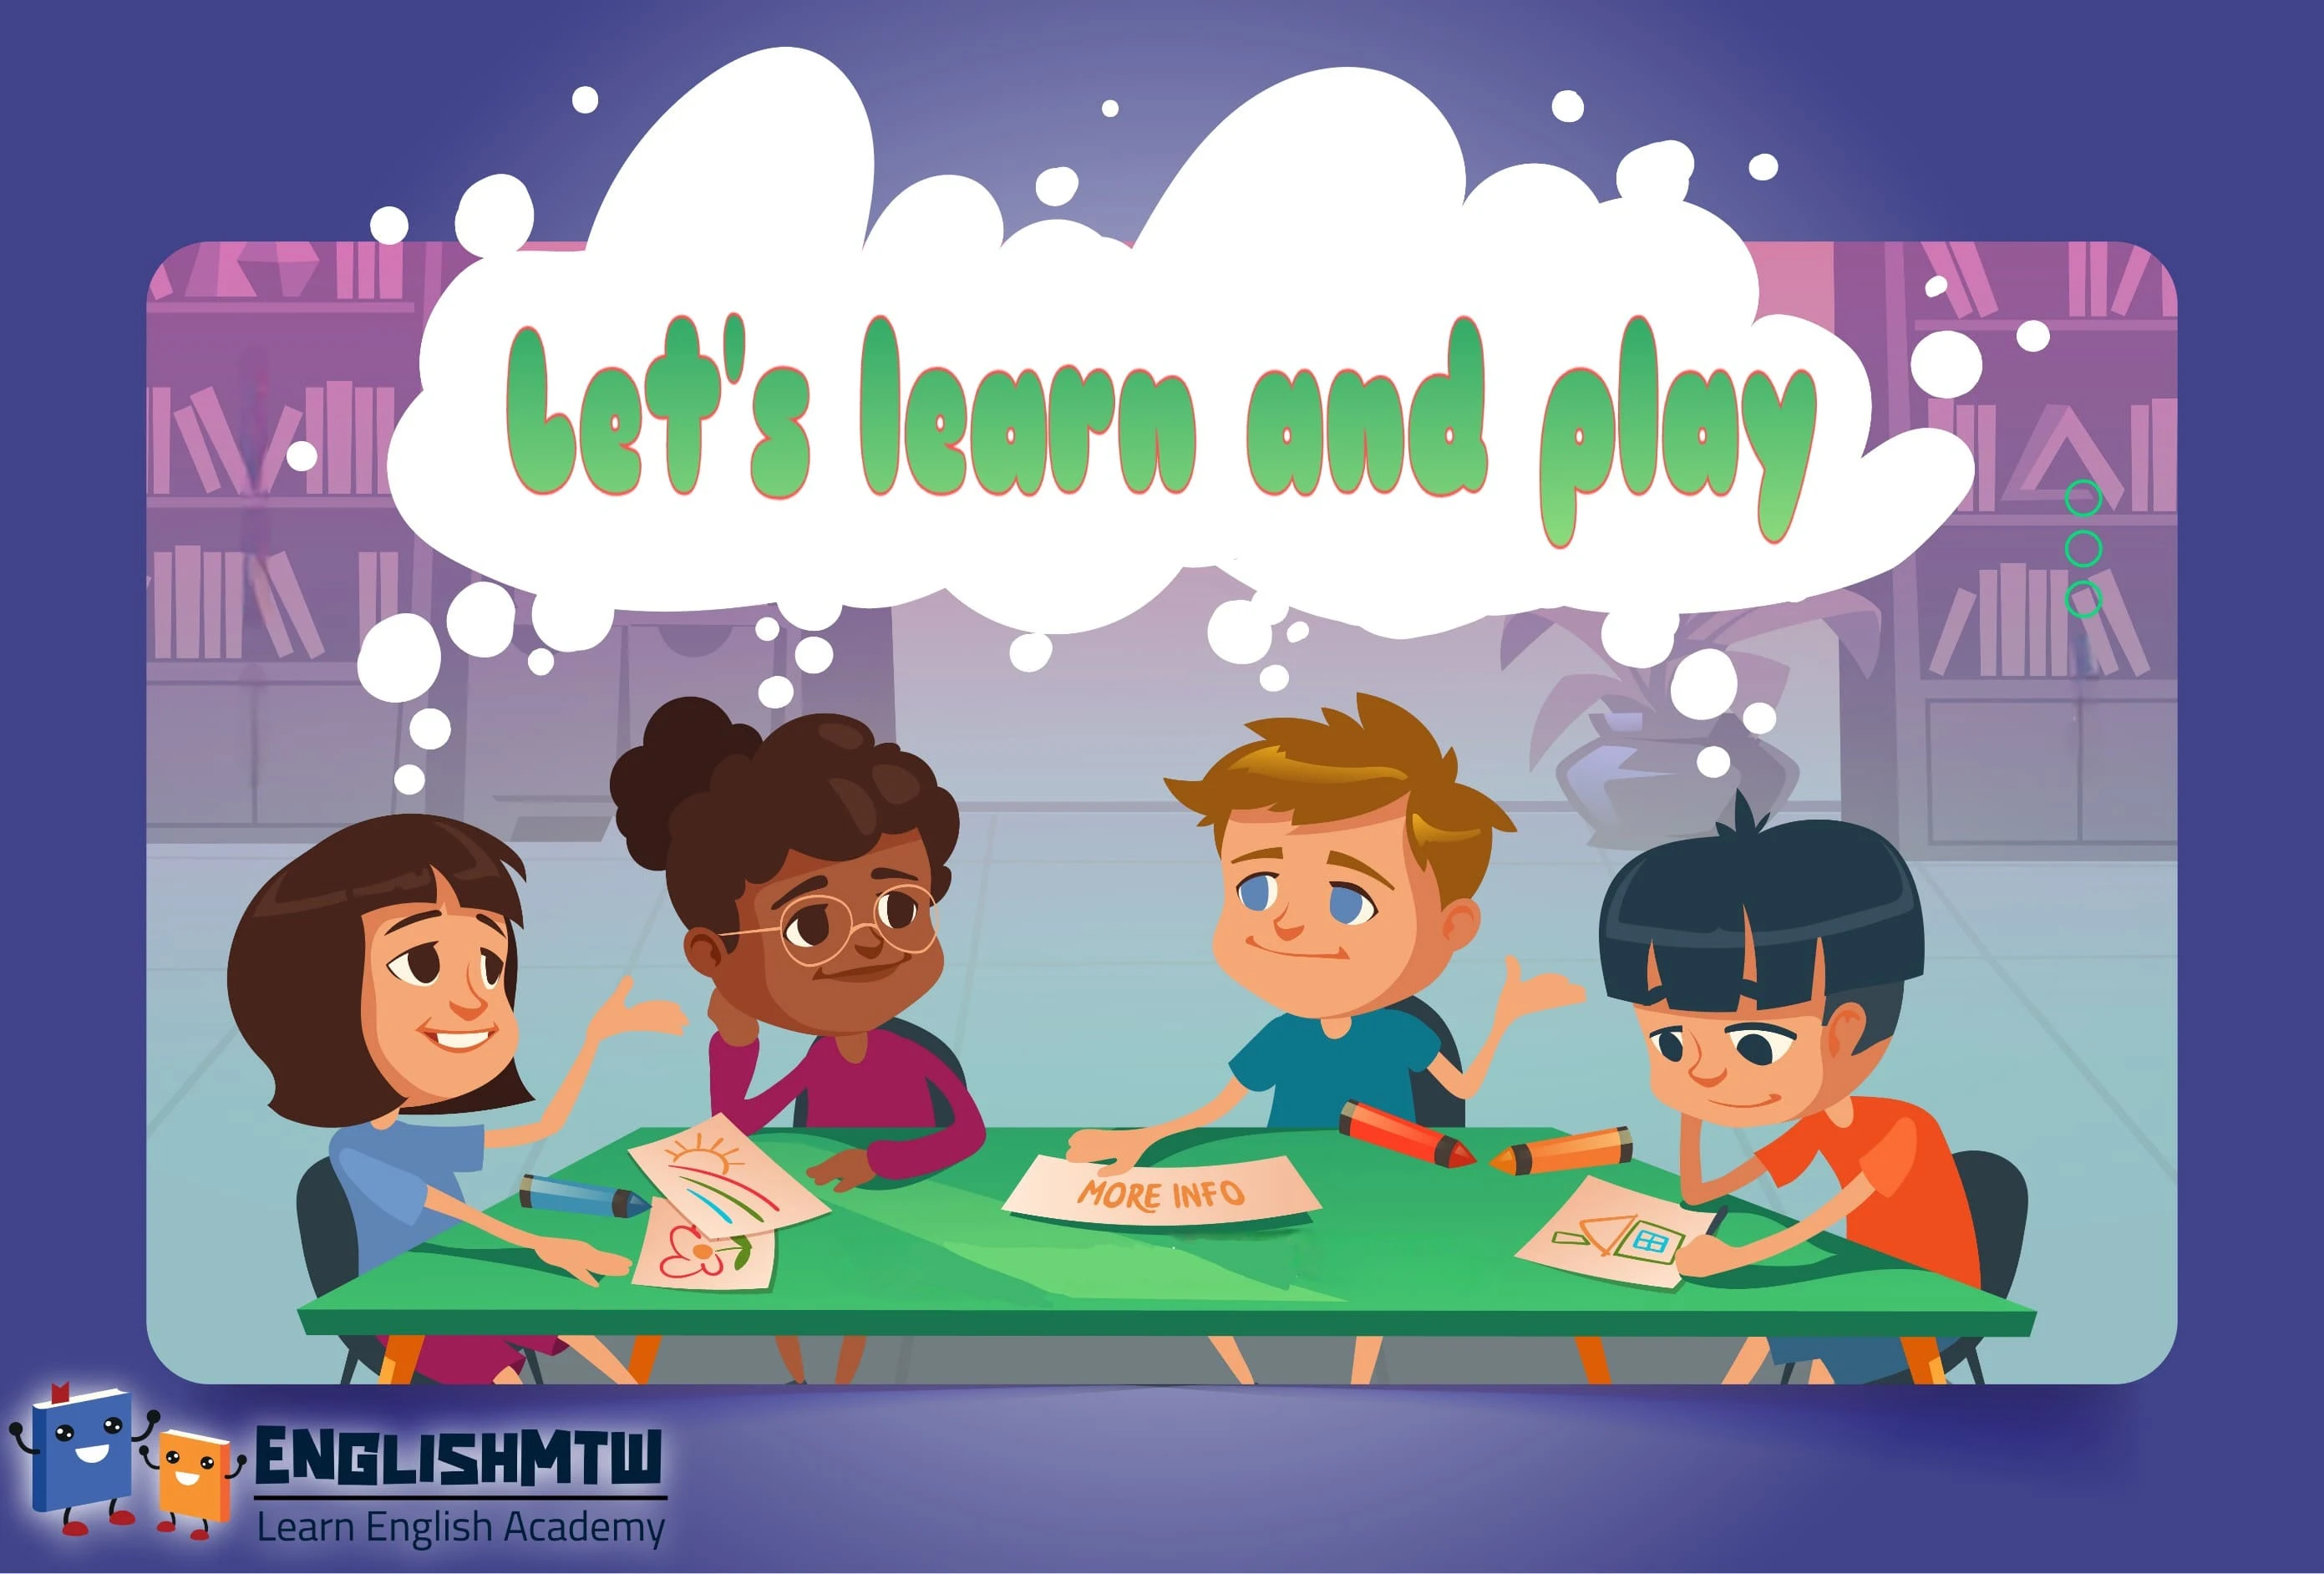 تمنحك ألعاب الطاولة Board games الفرصة للعب مع متعلمي اللغة الإنجليزية الآخرين